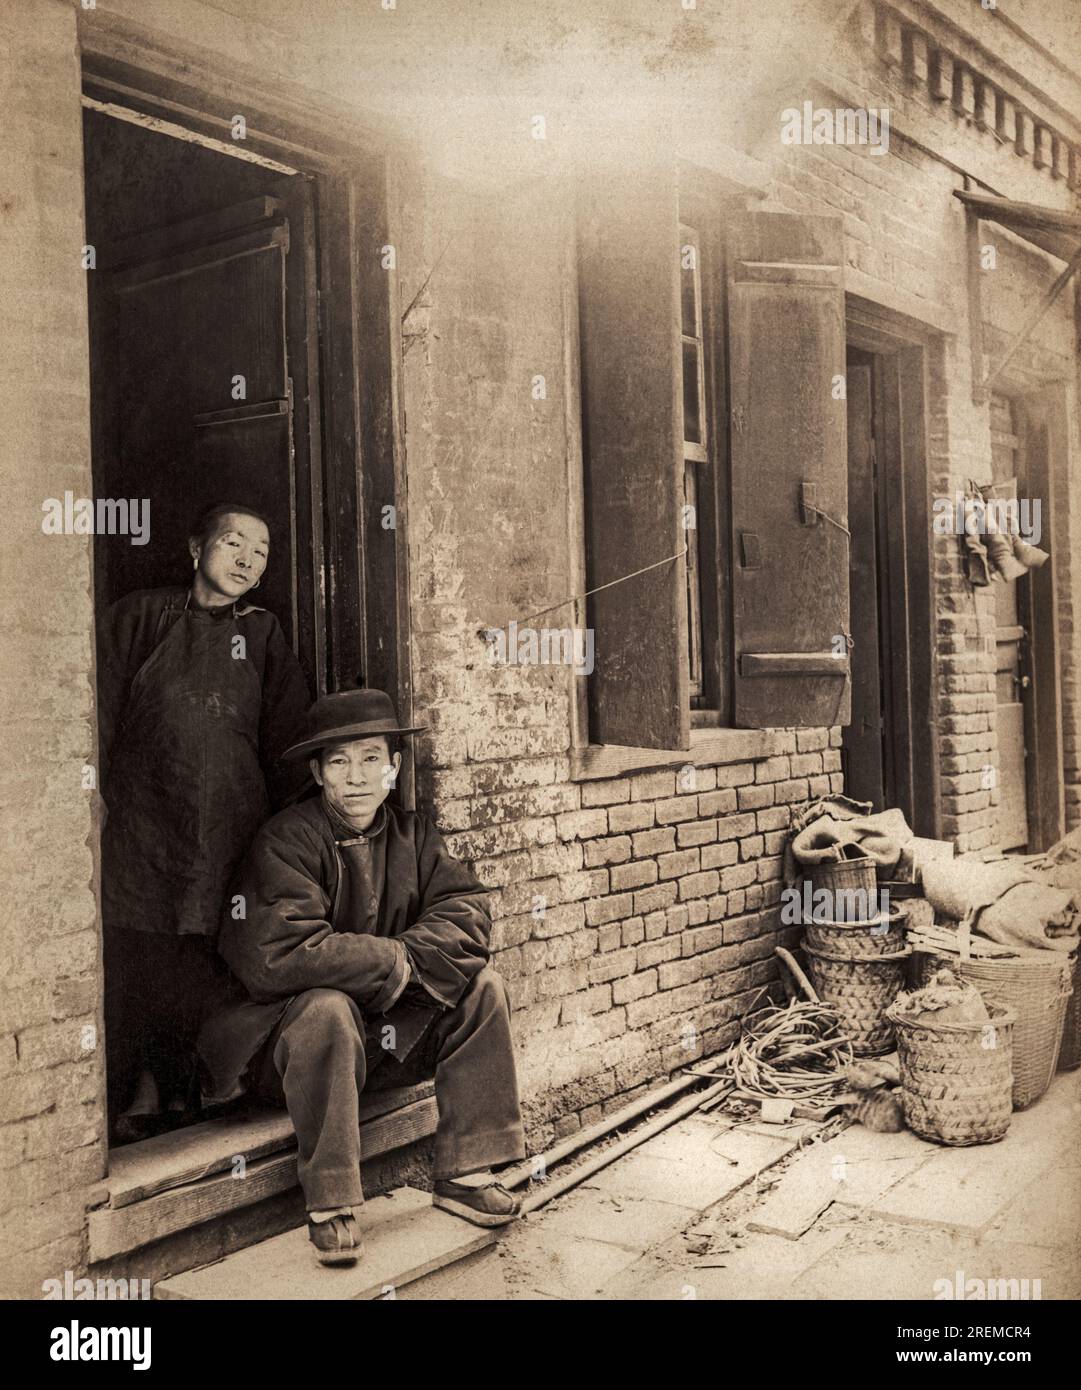 San Francisco, Californie vers 1890 deux résidents chinois de 'Rag Alley' dans une photographie du photographe SF Isaiah Taber. Banque D'Images